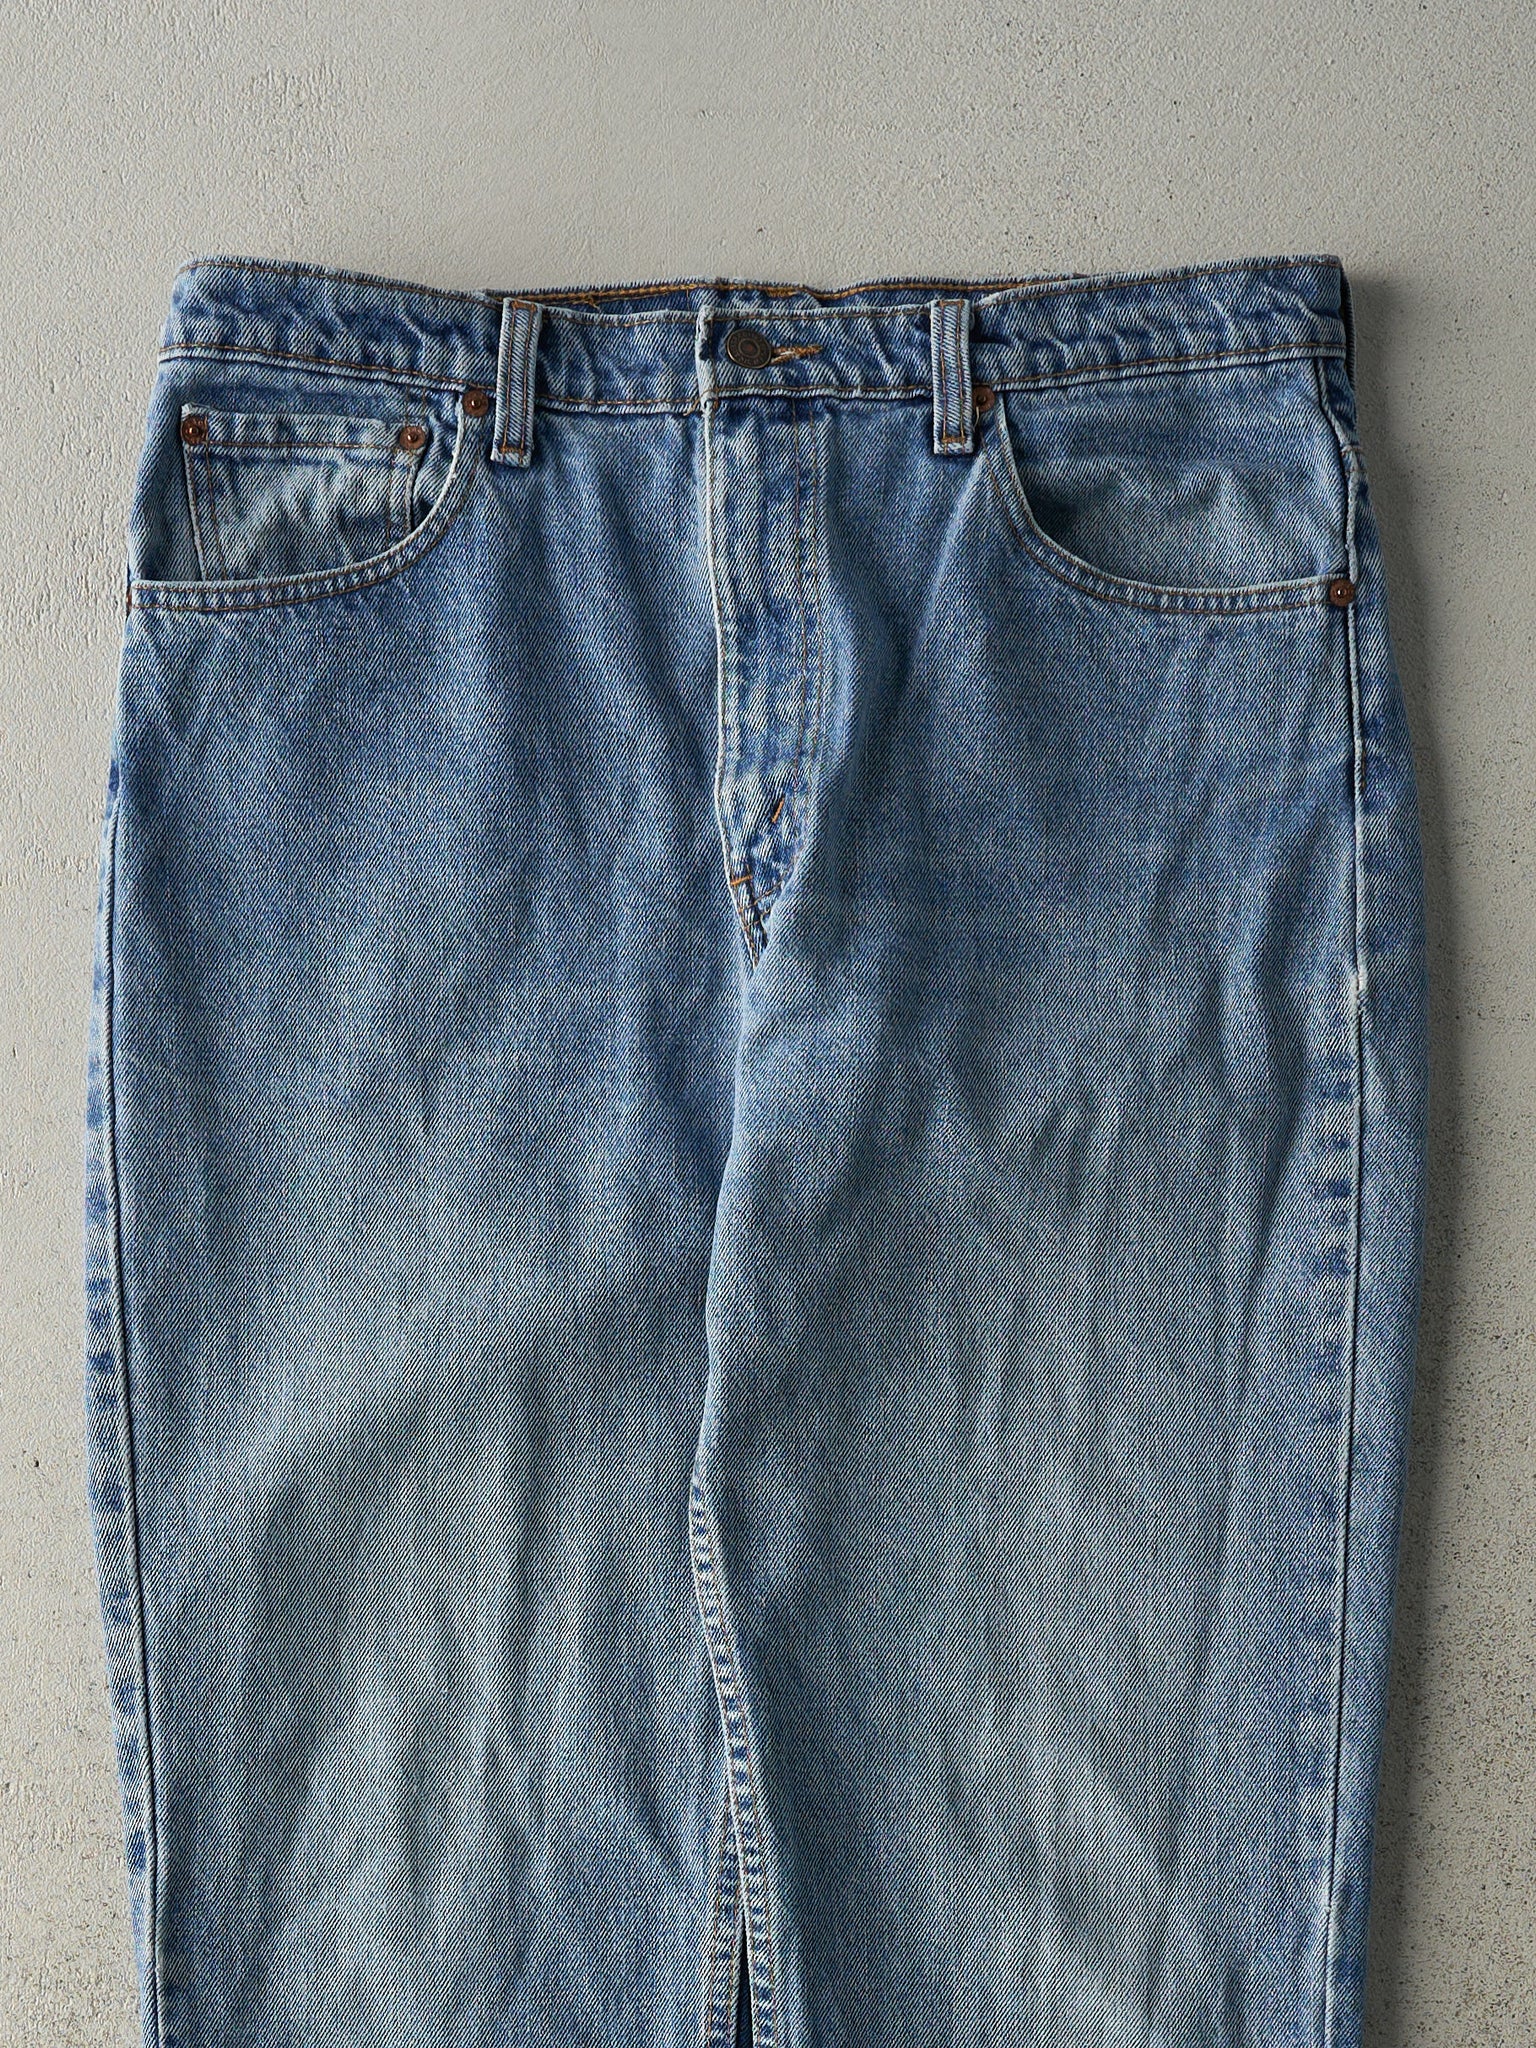 Vintage 90s Light Wash Levi's 512 Jeans (34x30)